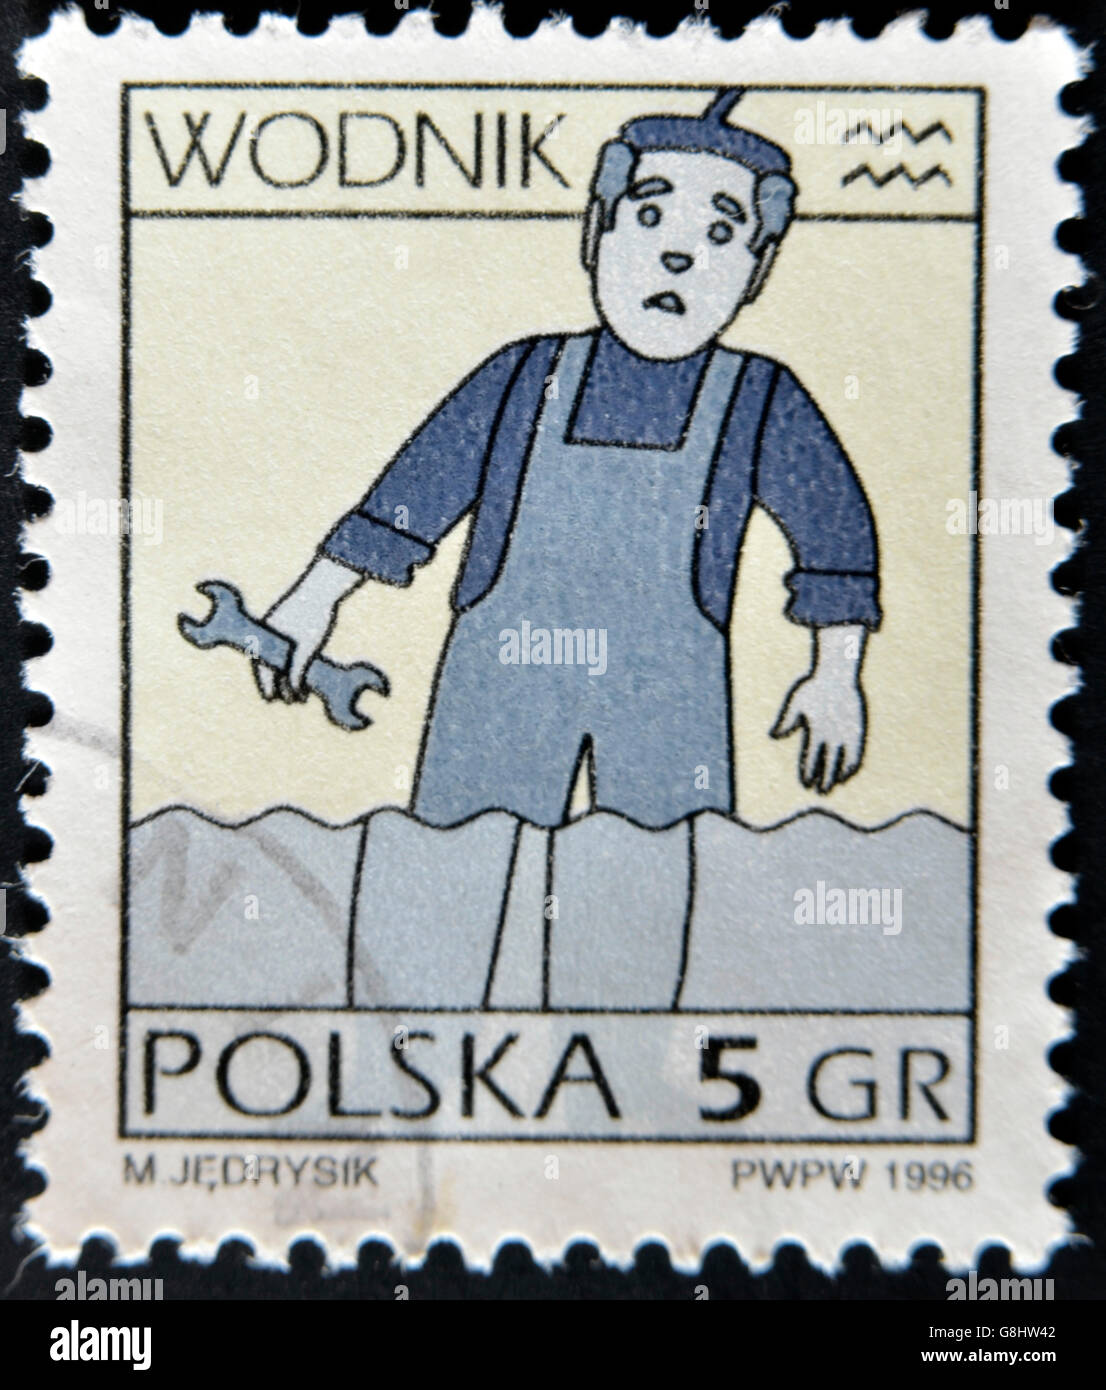 POLAND -CIRCA 1996: A stamp printed in Poland shows Zodiac signs, aquarius, circa 1996. Stock Photo